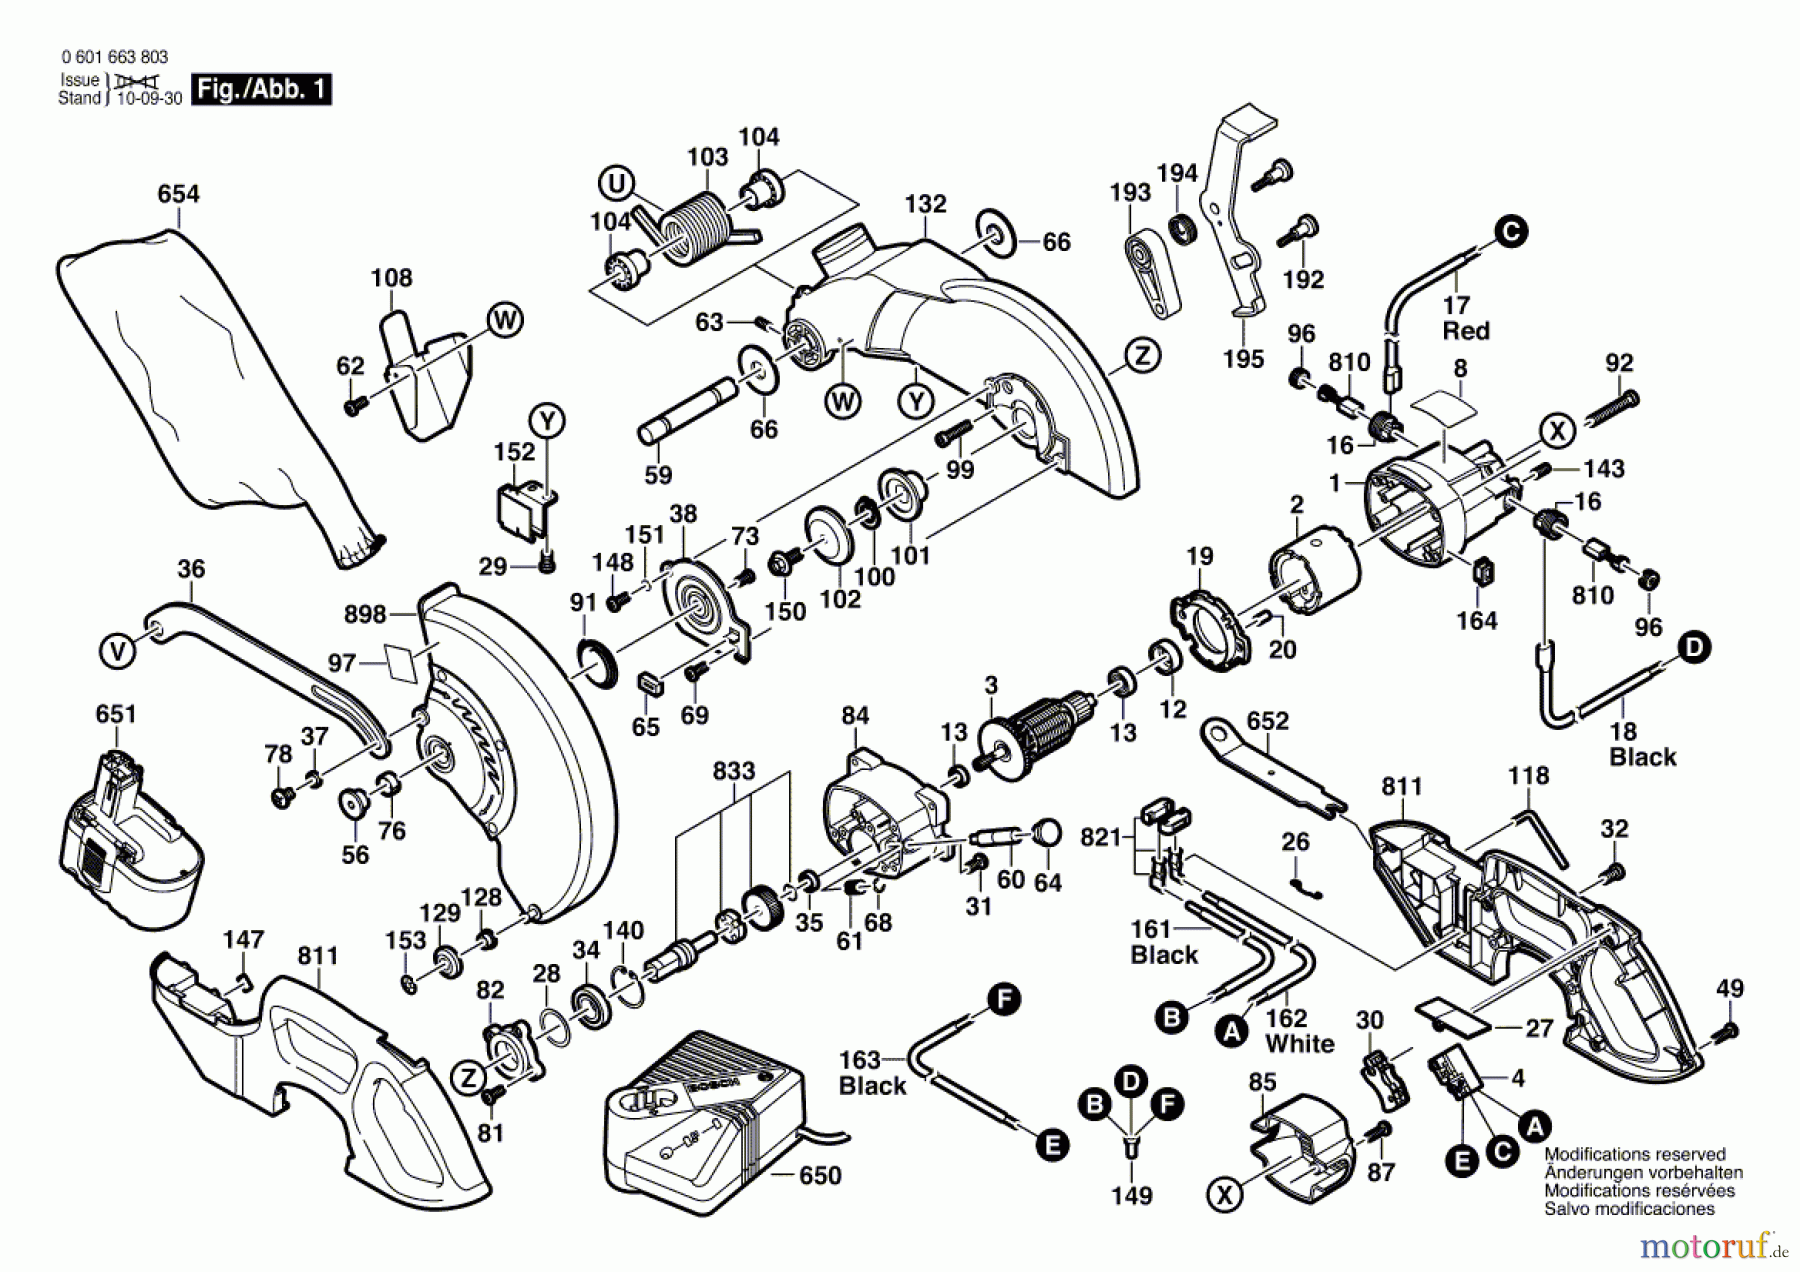  Bosch Werkzeug Kapp-/Gehrungssäge GKG 24 V Seite 1